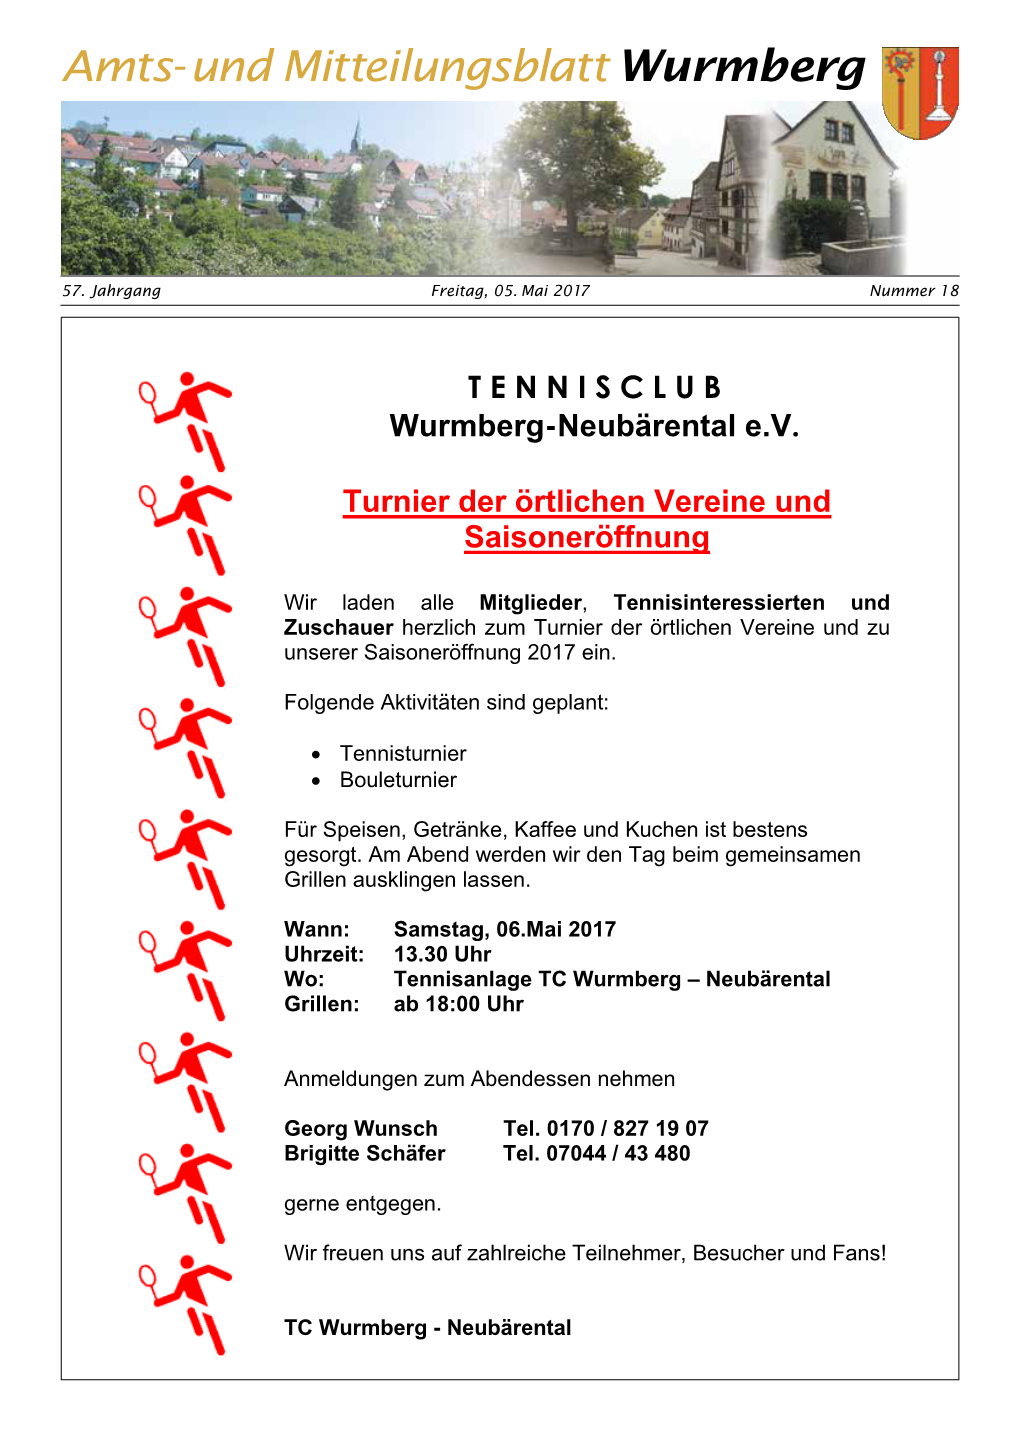 TENNISCLUB Wurmberg-Neubärental Ev